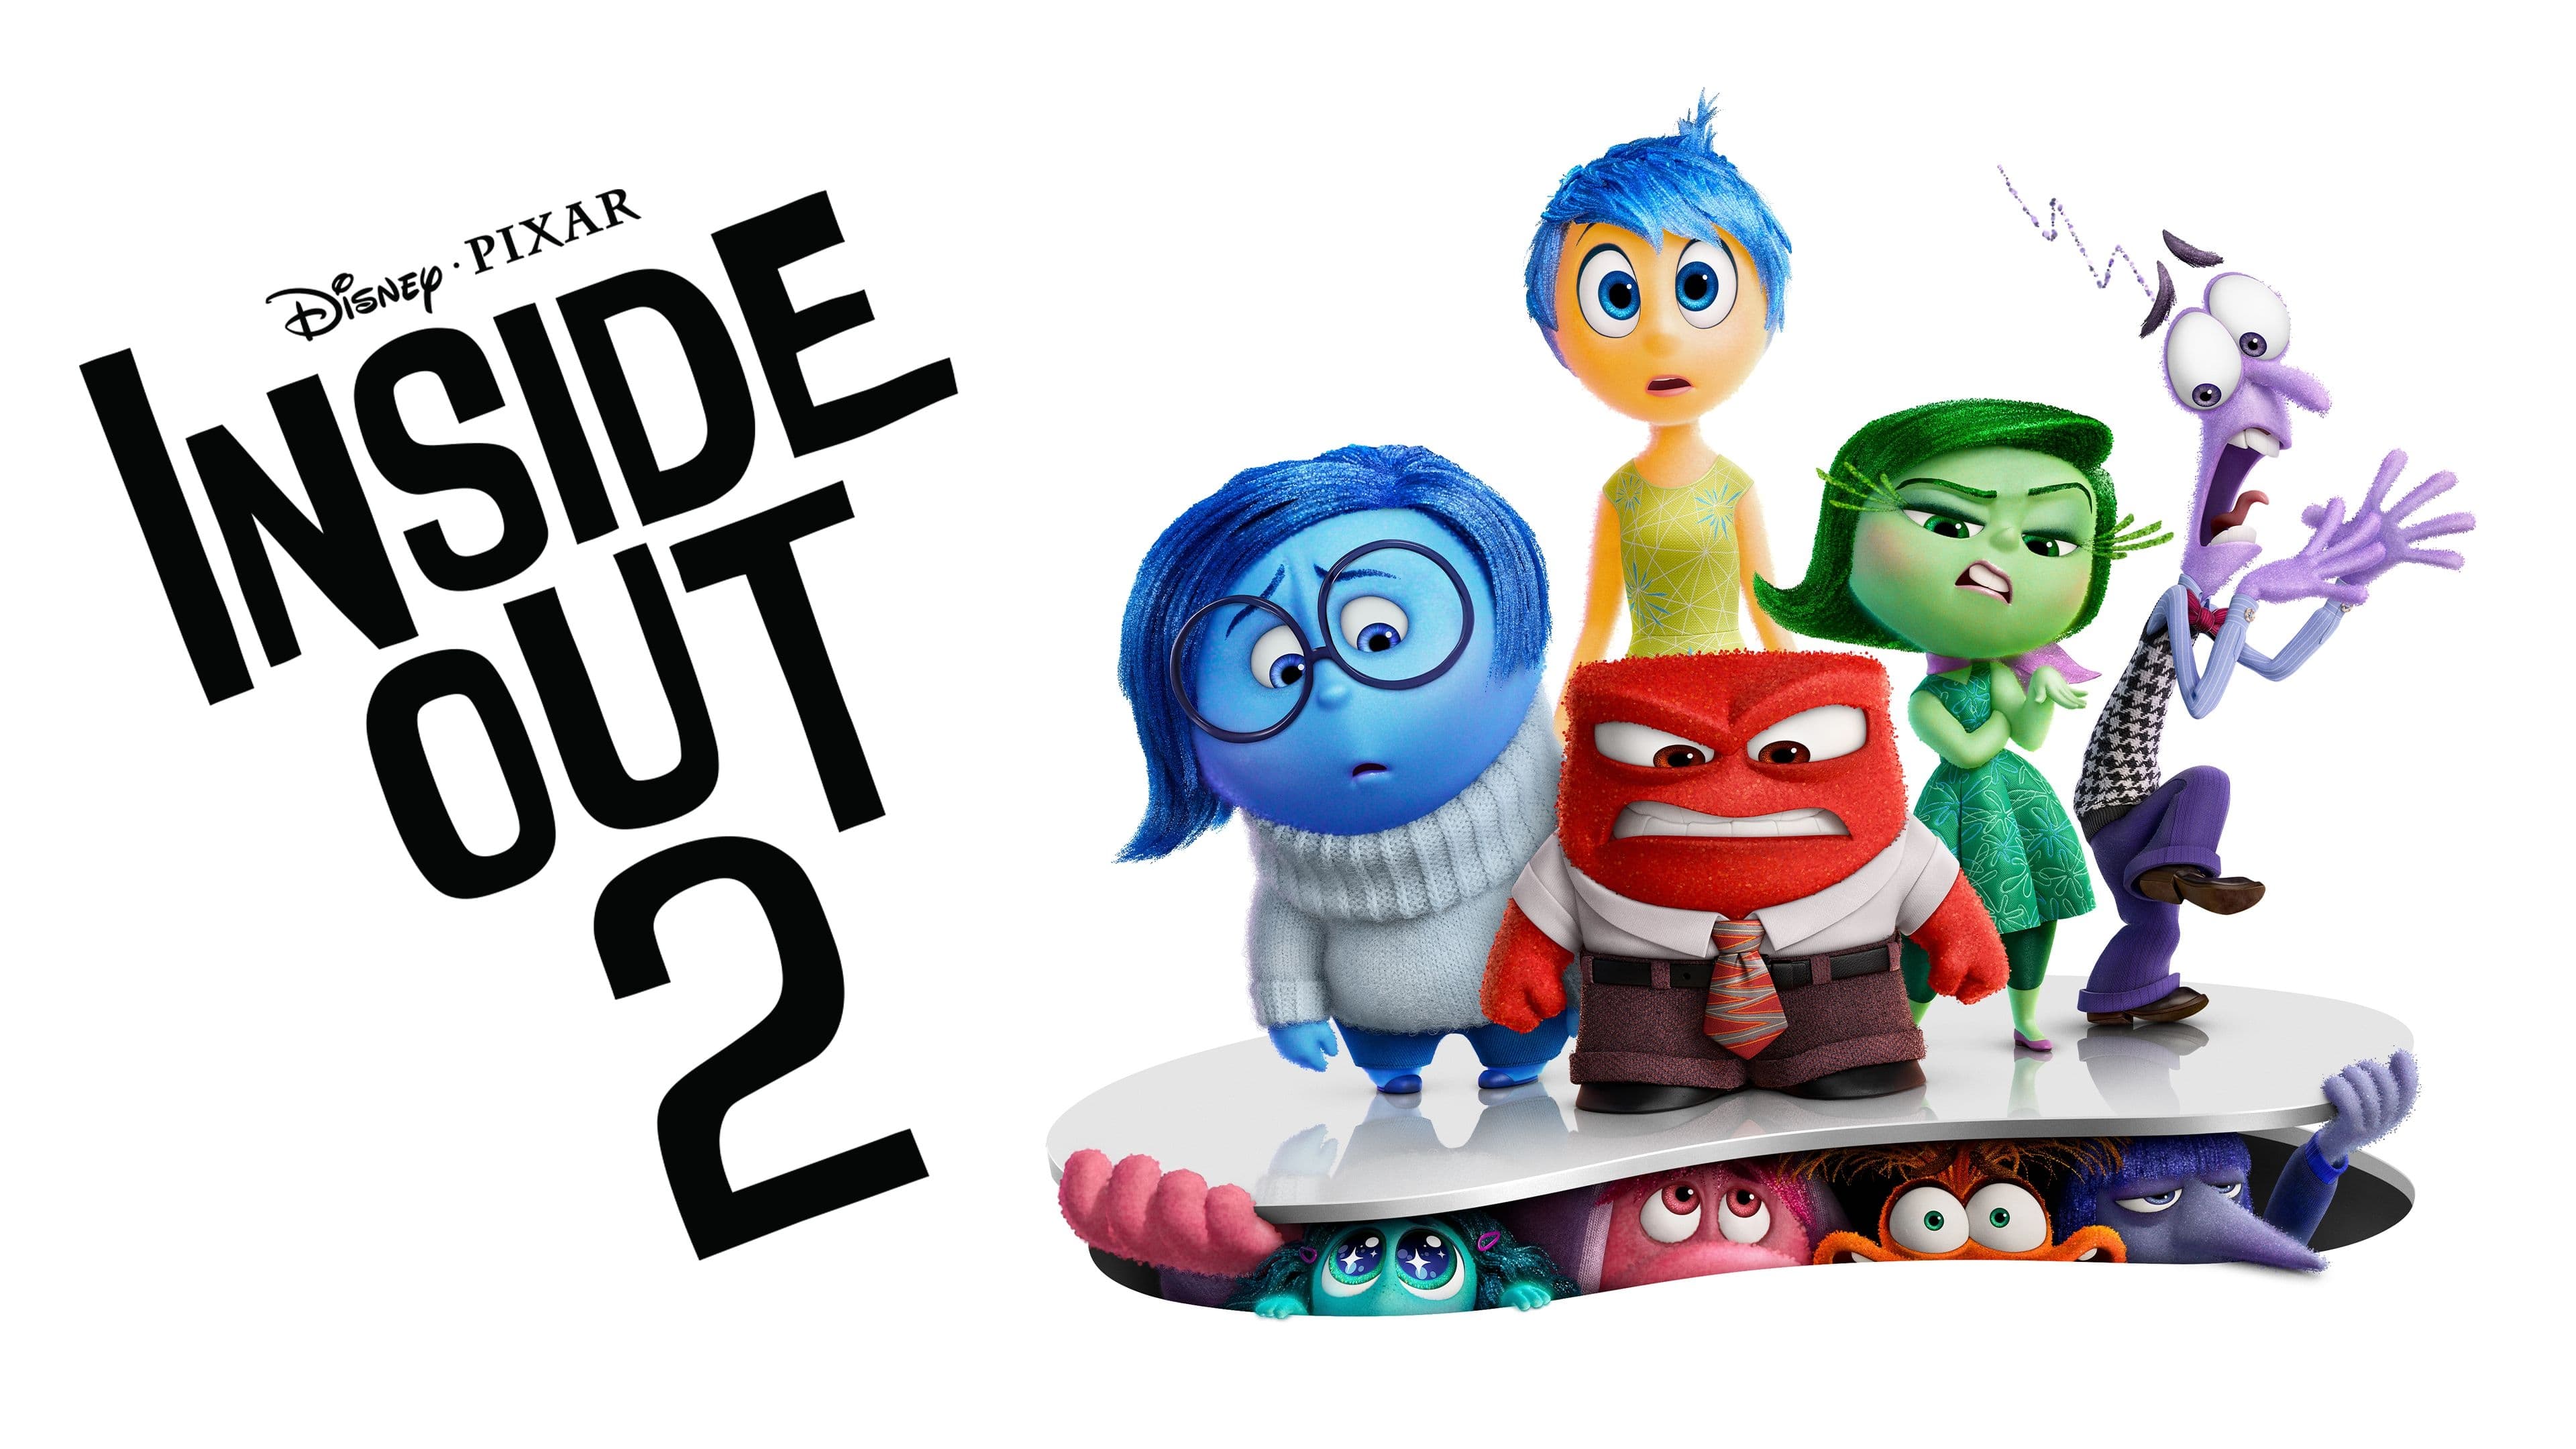 Inside Out 2: film di animazione del 2024 In Inside Out 2, Riley  giunta all'adolescenza, un periodo di cambiamenti tumultuosi. Le emozioni - Gioia, Tristezza, Rabbia, Paura e Disgusto - si trovano ad affrontare nuove sfide con l'introduzione di Ansia, Noia, Invidia e Imbarazzo.  - Immagini gratis